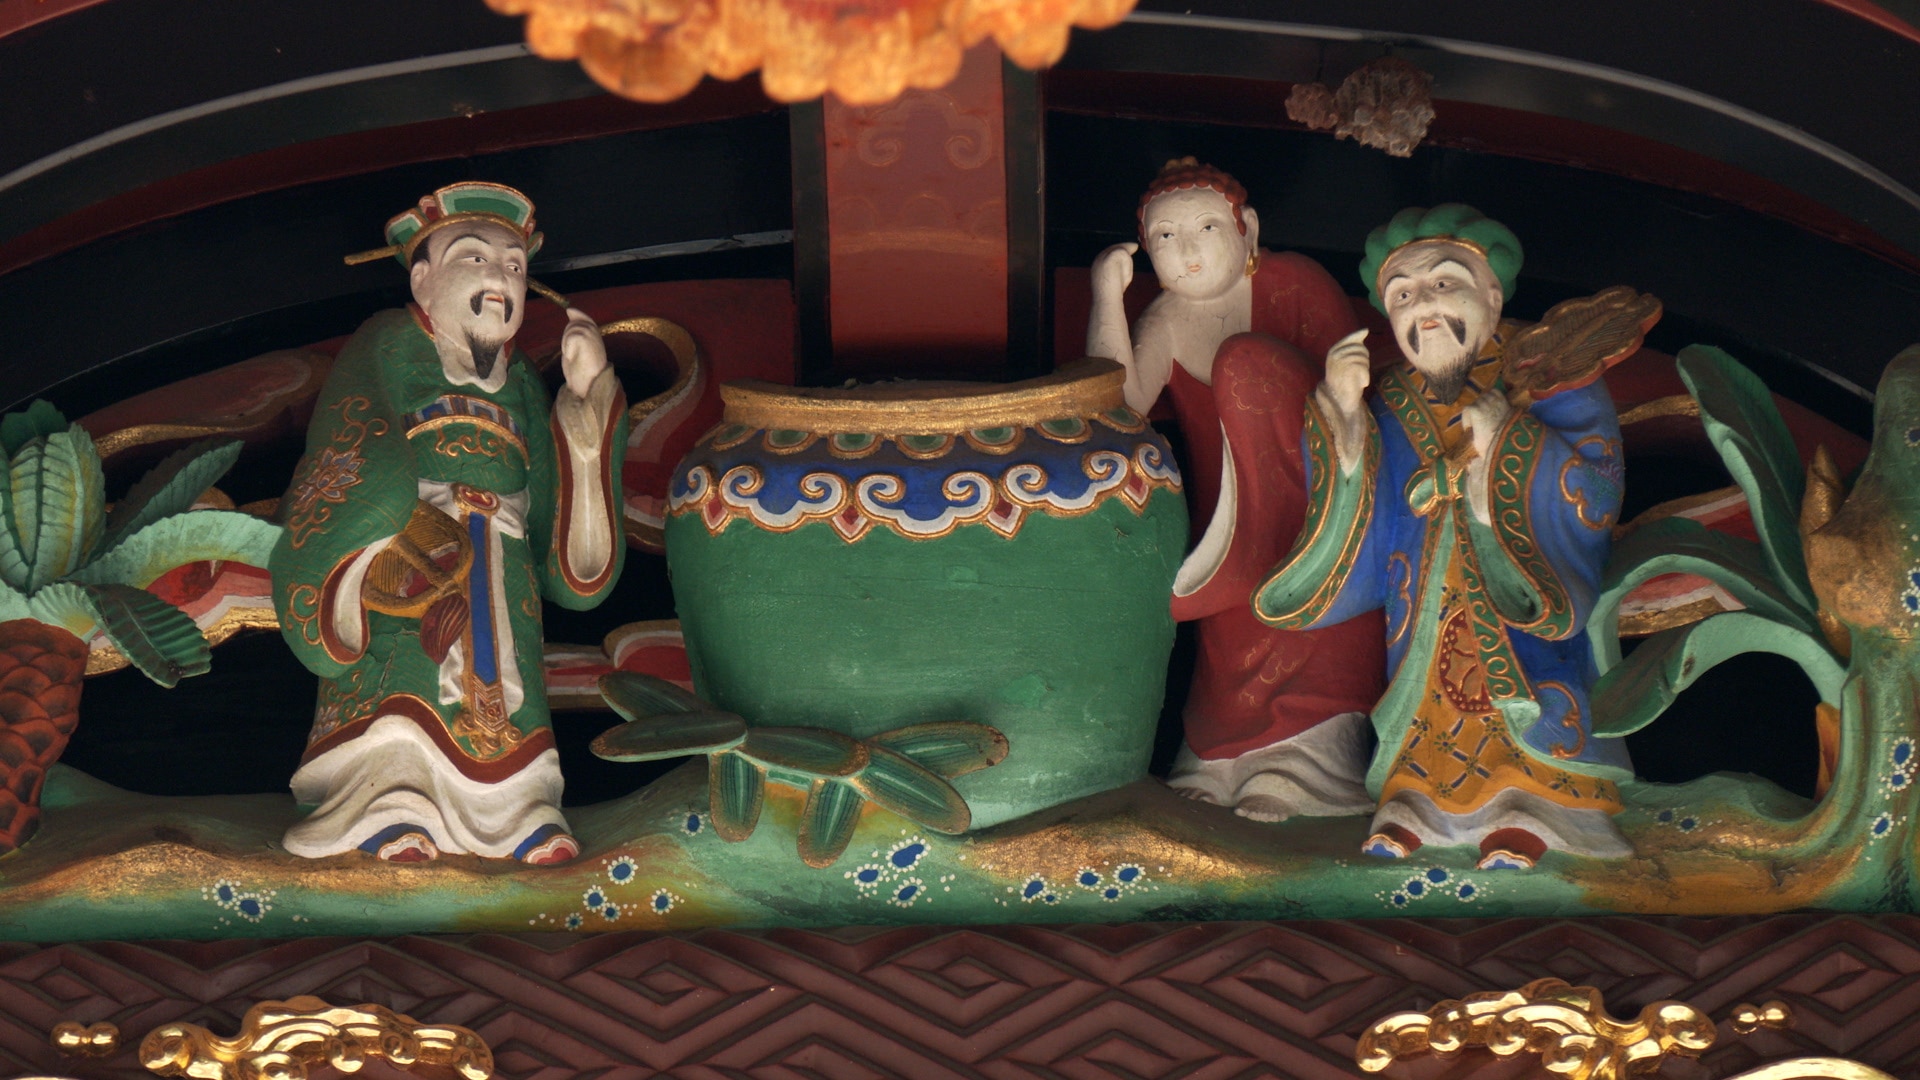 埼玉・妻沼聖天山の本堂の壁にあしらわれた「三聖吸酸」の彫刻